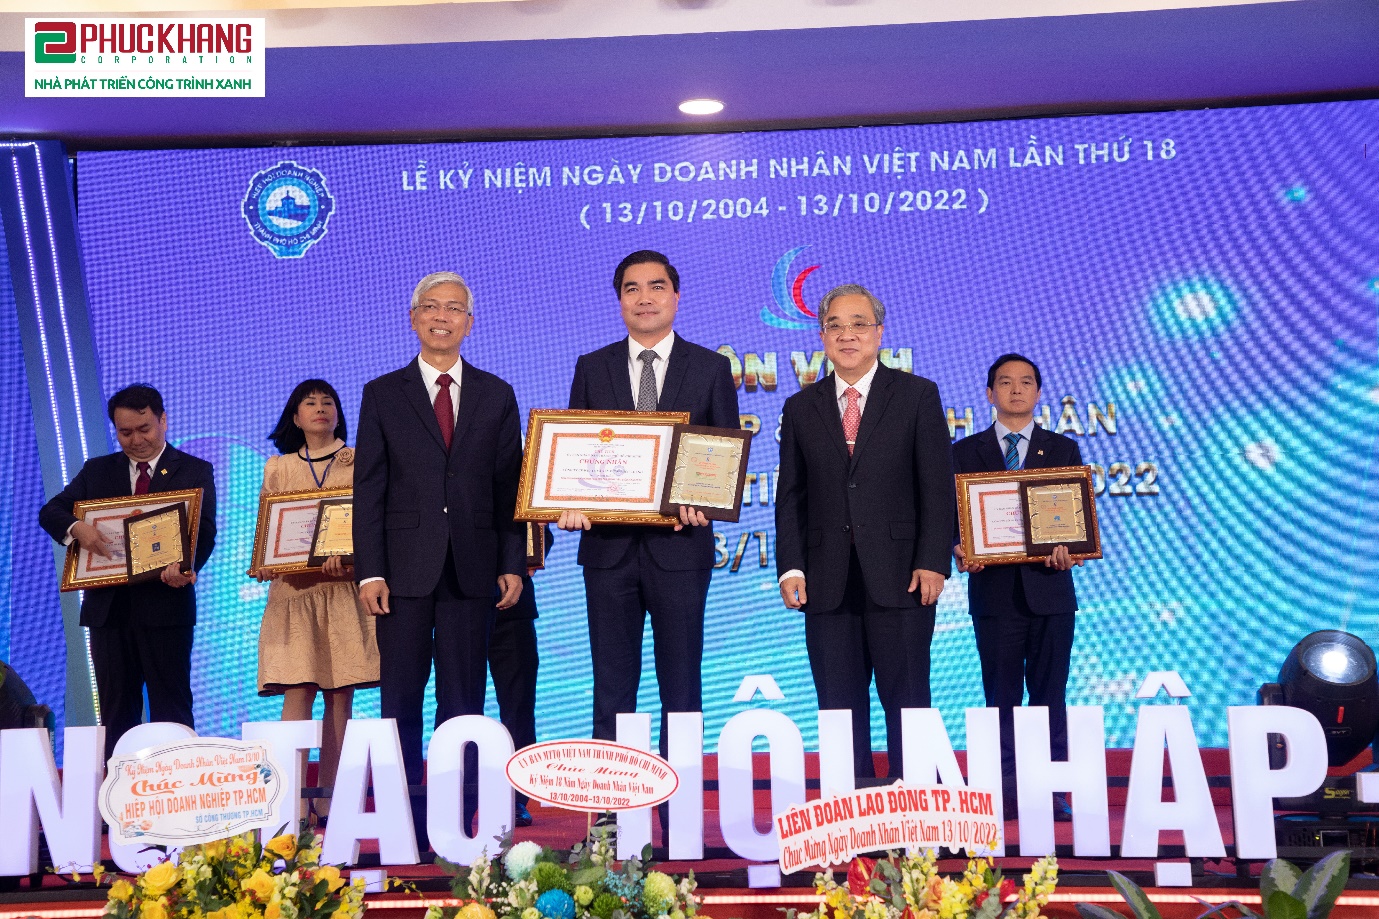 Ông Trần Tam - Chủ tịch HĐQT Phuc Khang Corporation vinh dự đón nhận danh hiệu Doanh nghiệp TPHCM tiêu biểu năm 2022 - Ảnh: Phúc Khang